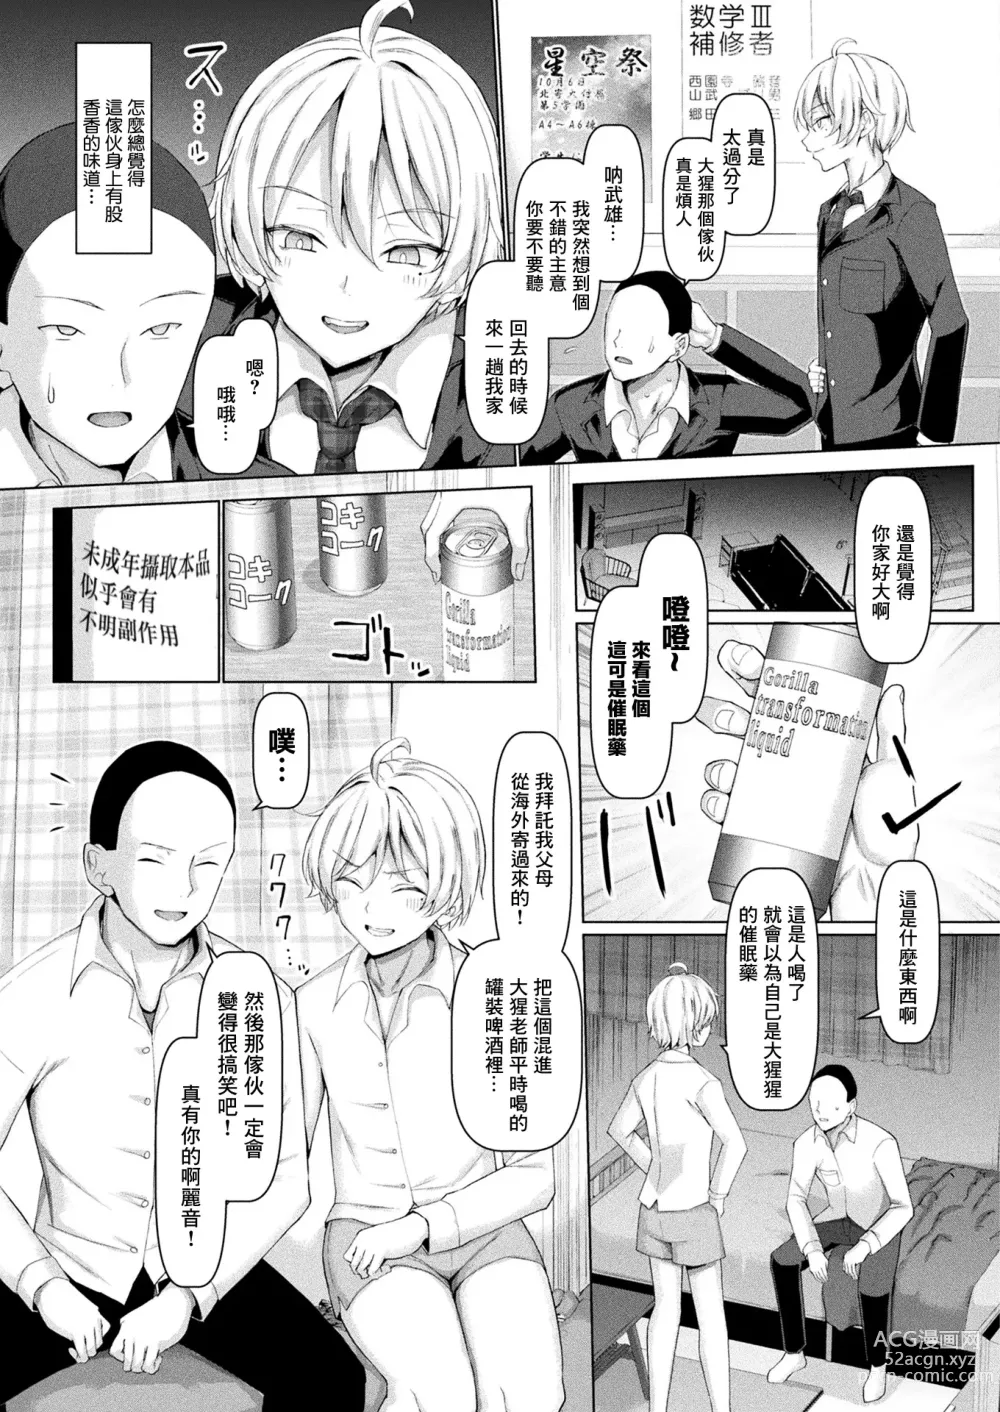 Page 4 of manga Mabudachi Nagachichi Daihenshin